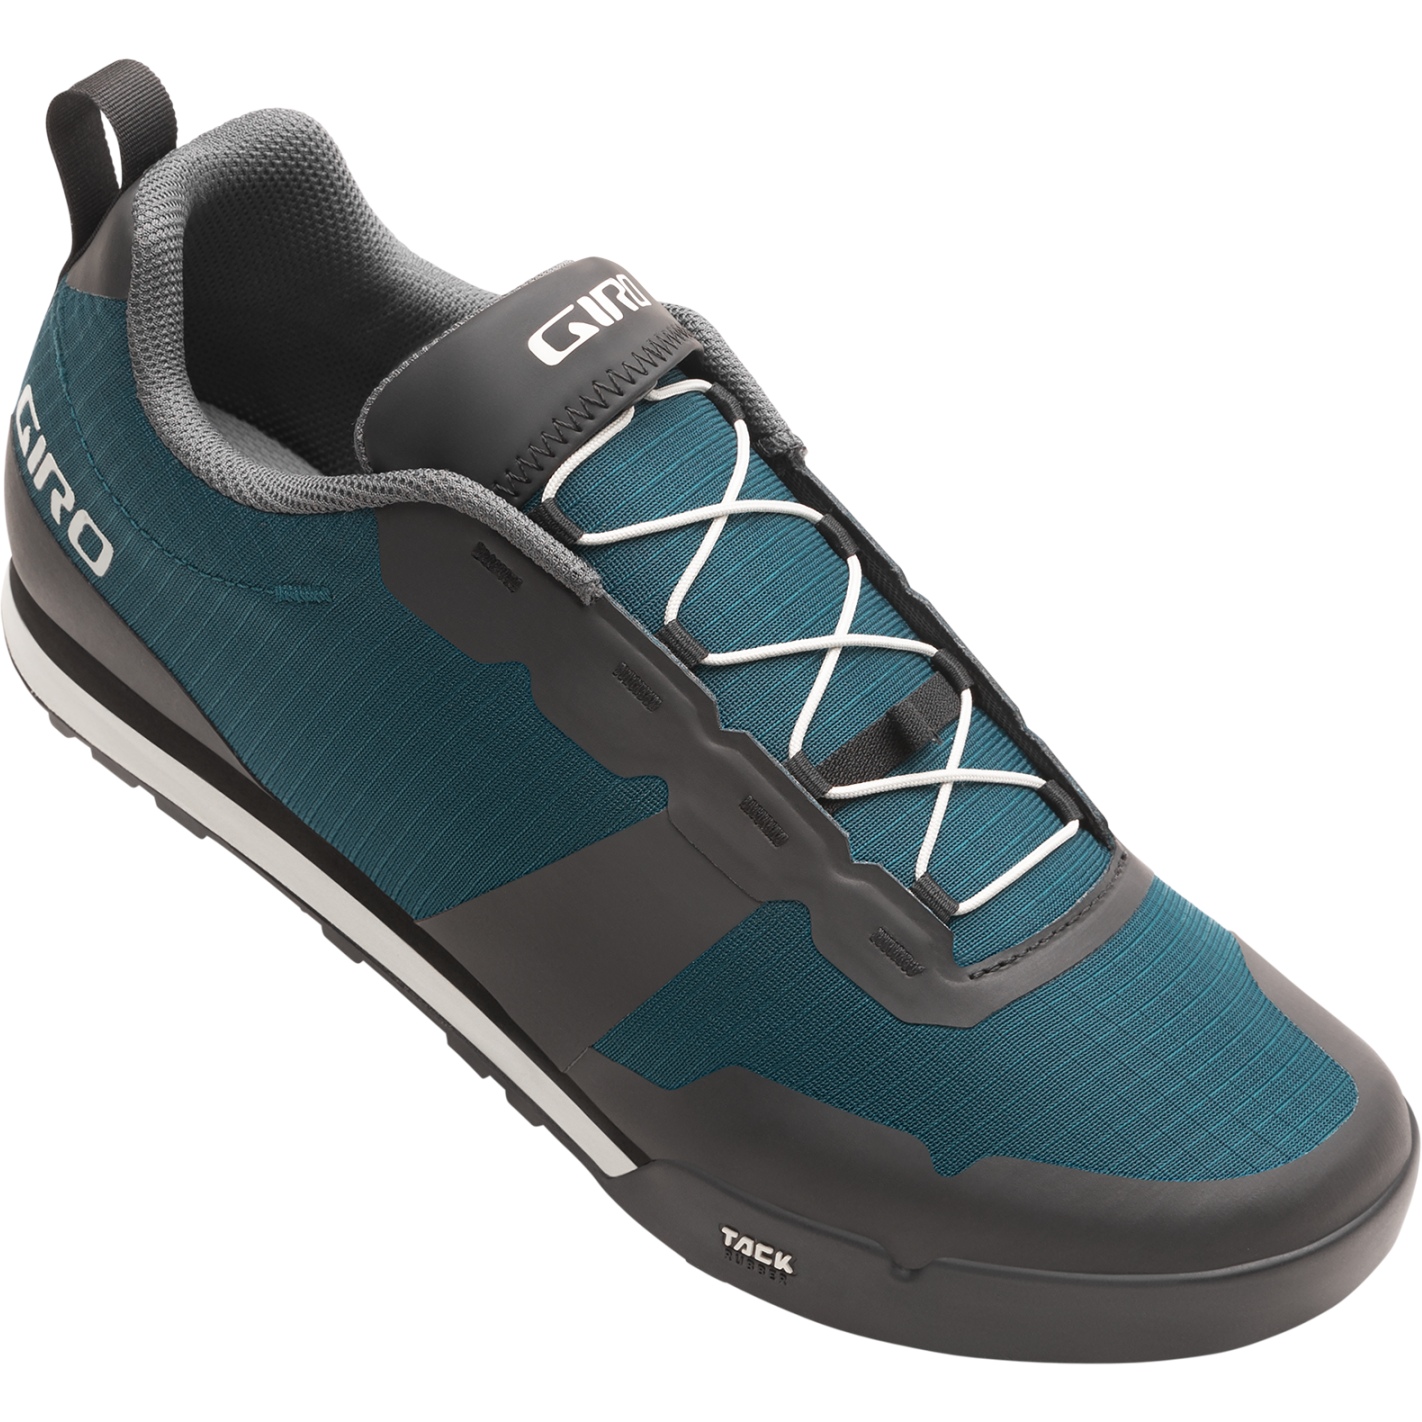 Produktbild von Giro Tracker Fastlace Flatpedal Schuhe Damen - harbor blue/sandstone